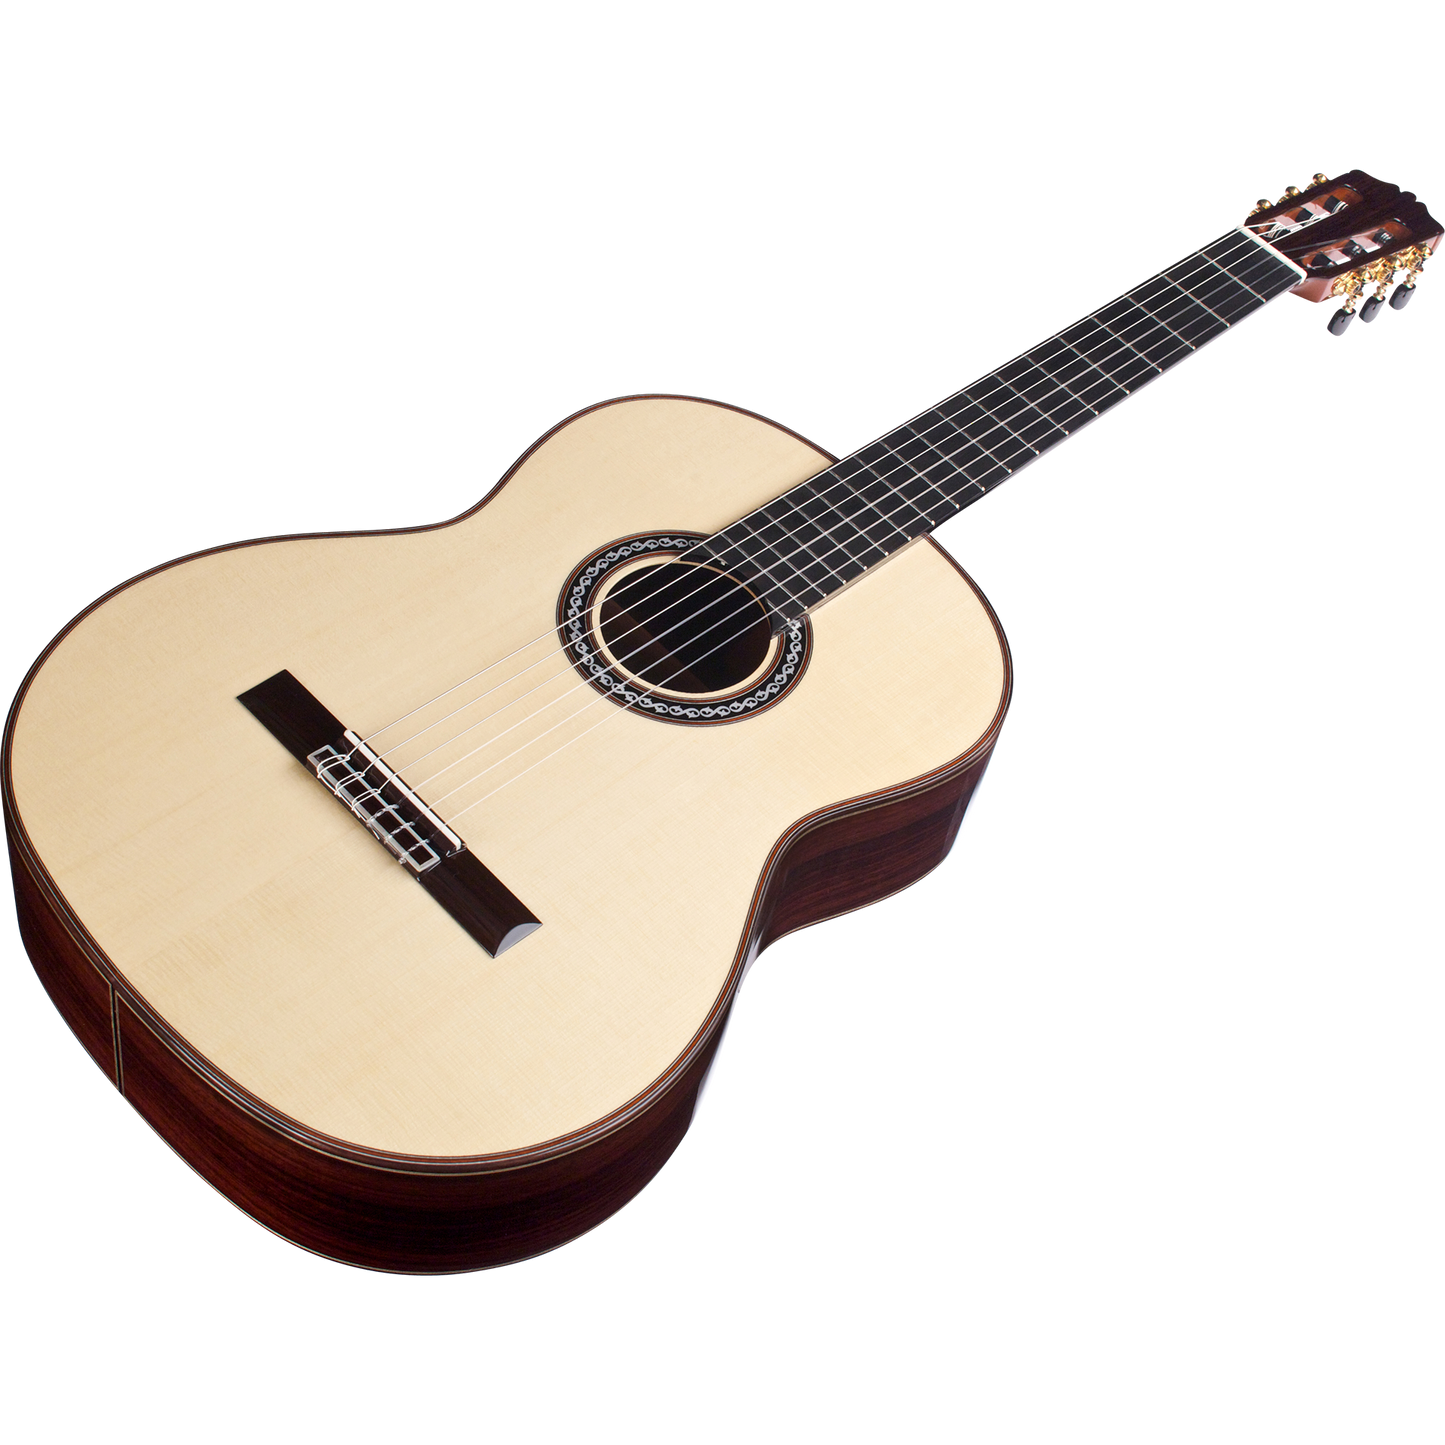 Cordoba C10 SP Acoustic Classical Guitar in Natural